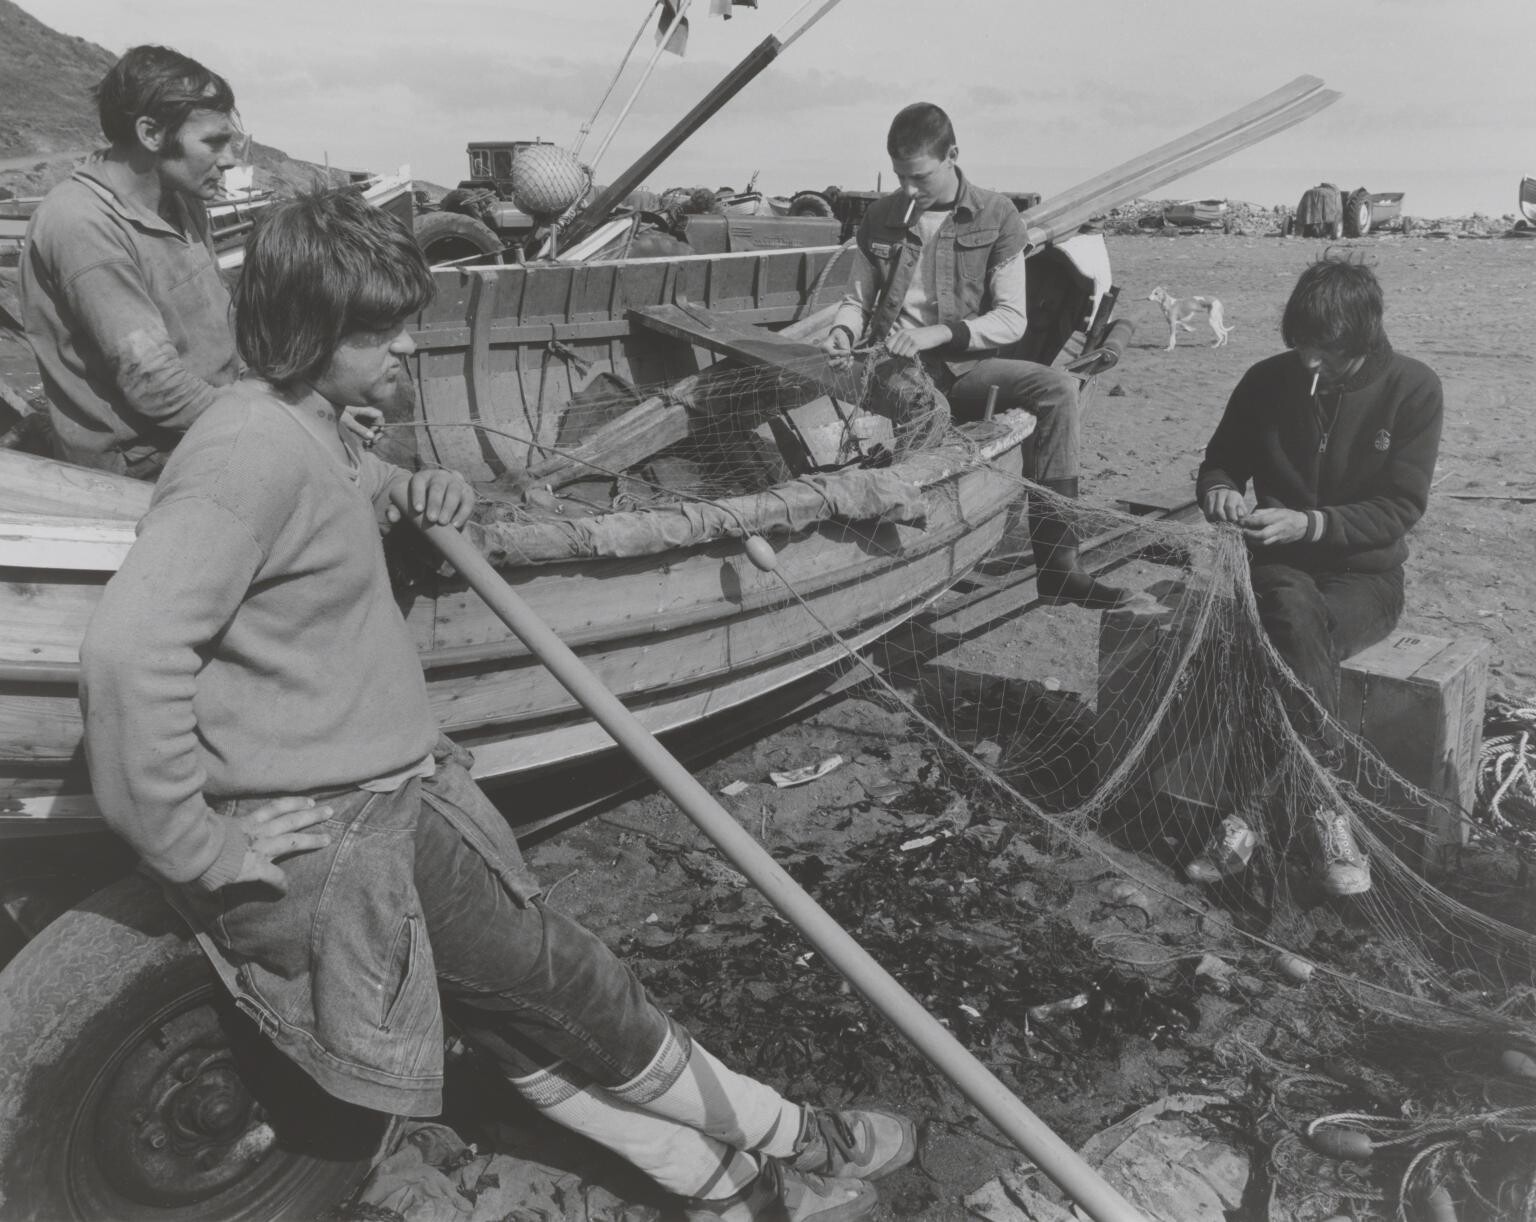 Работа на ремонте лодок, 1982 год. Фотограф Крис Киллип